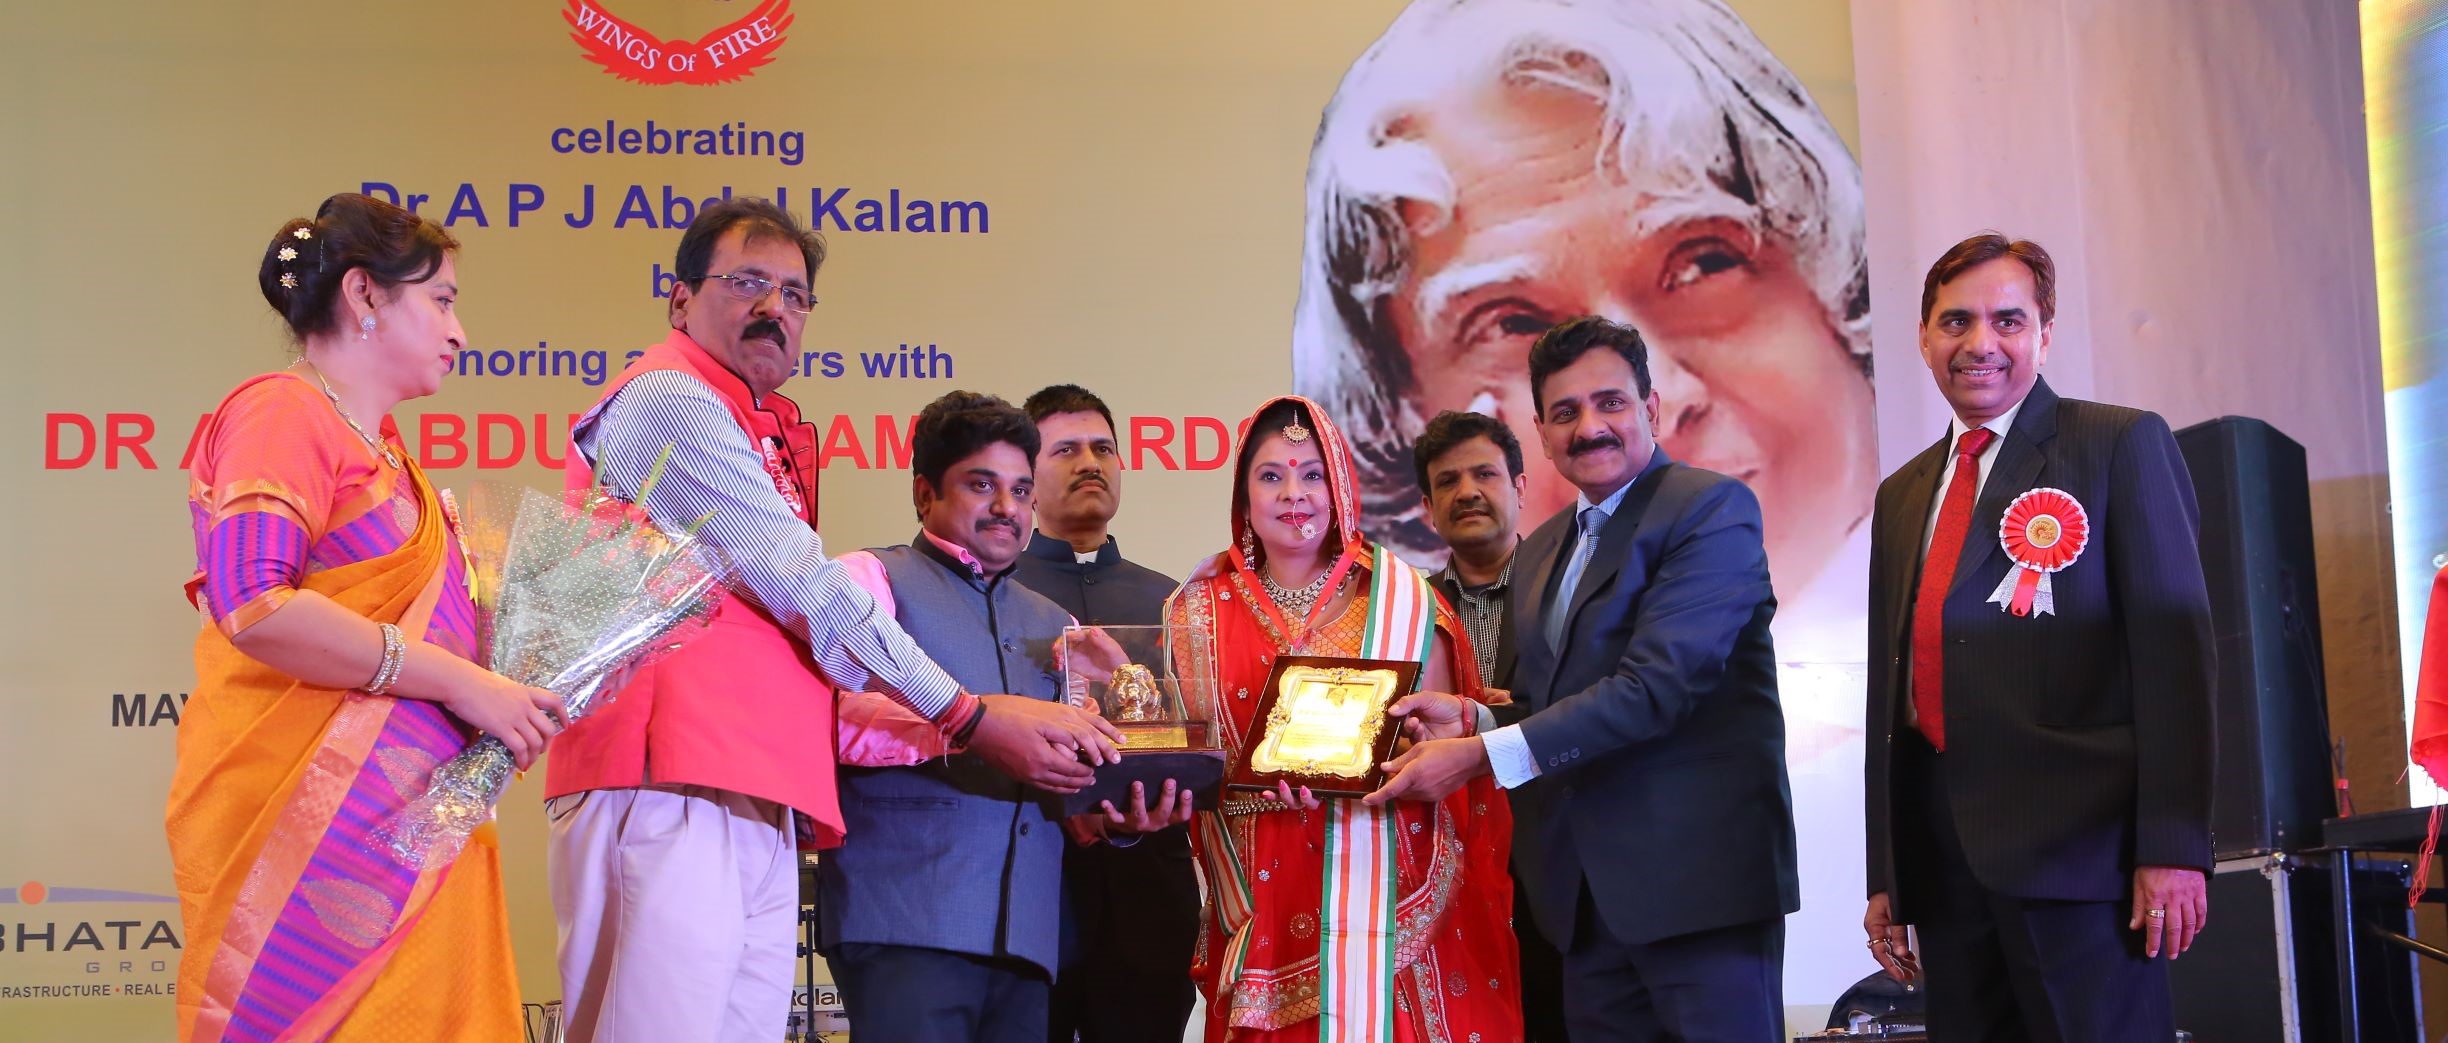 Malini Awasthi performing at Dr.Kalam Award at New Delhi